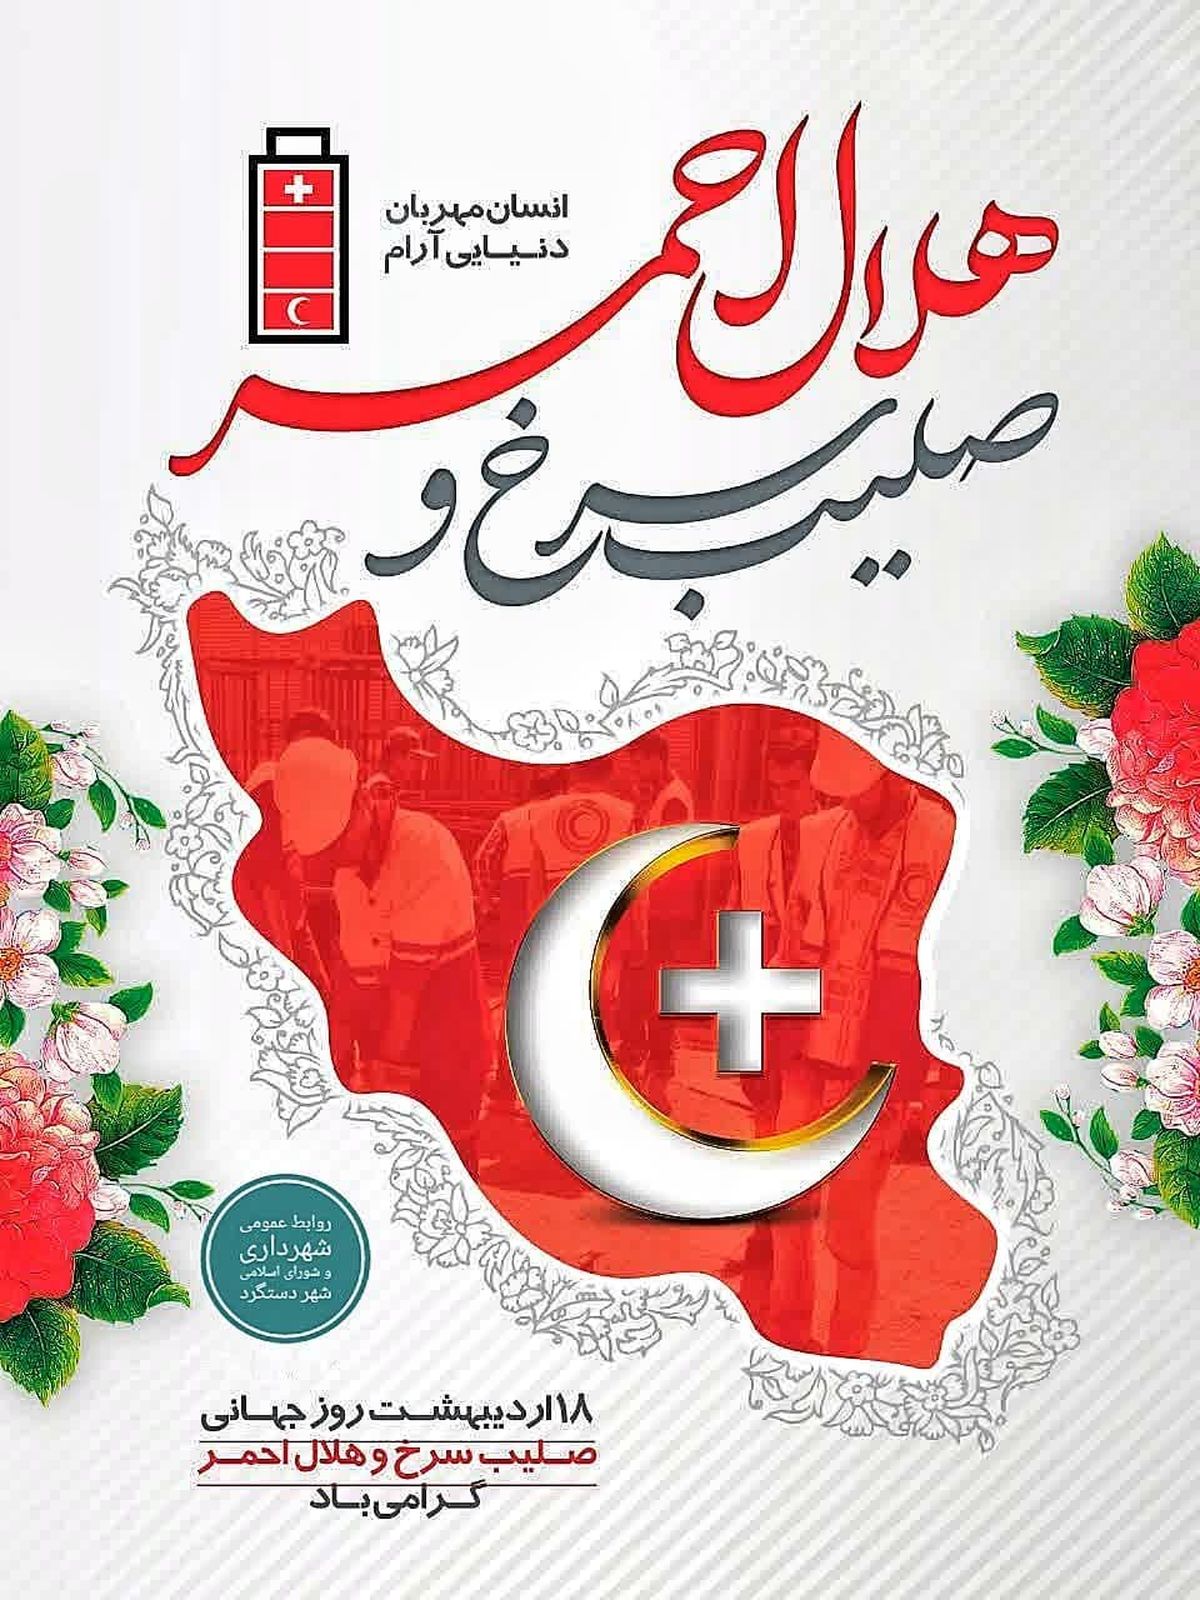 پیام تبریک شهرداری و شورای اسلامی شهر دستگرد به مناسبت روز جهانی صلیب سرخ و هلال احمر
